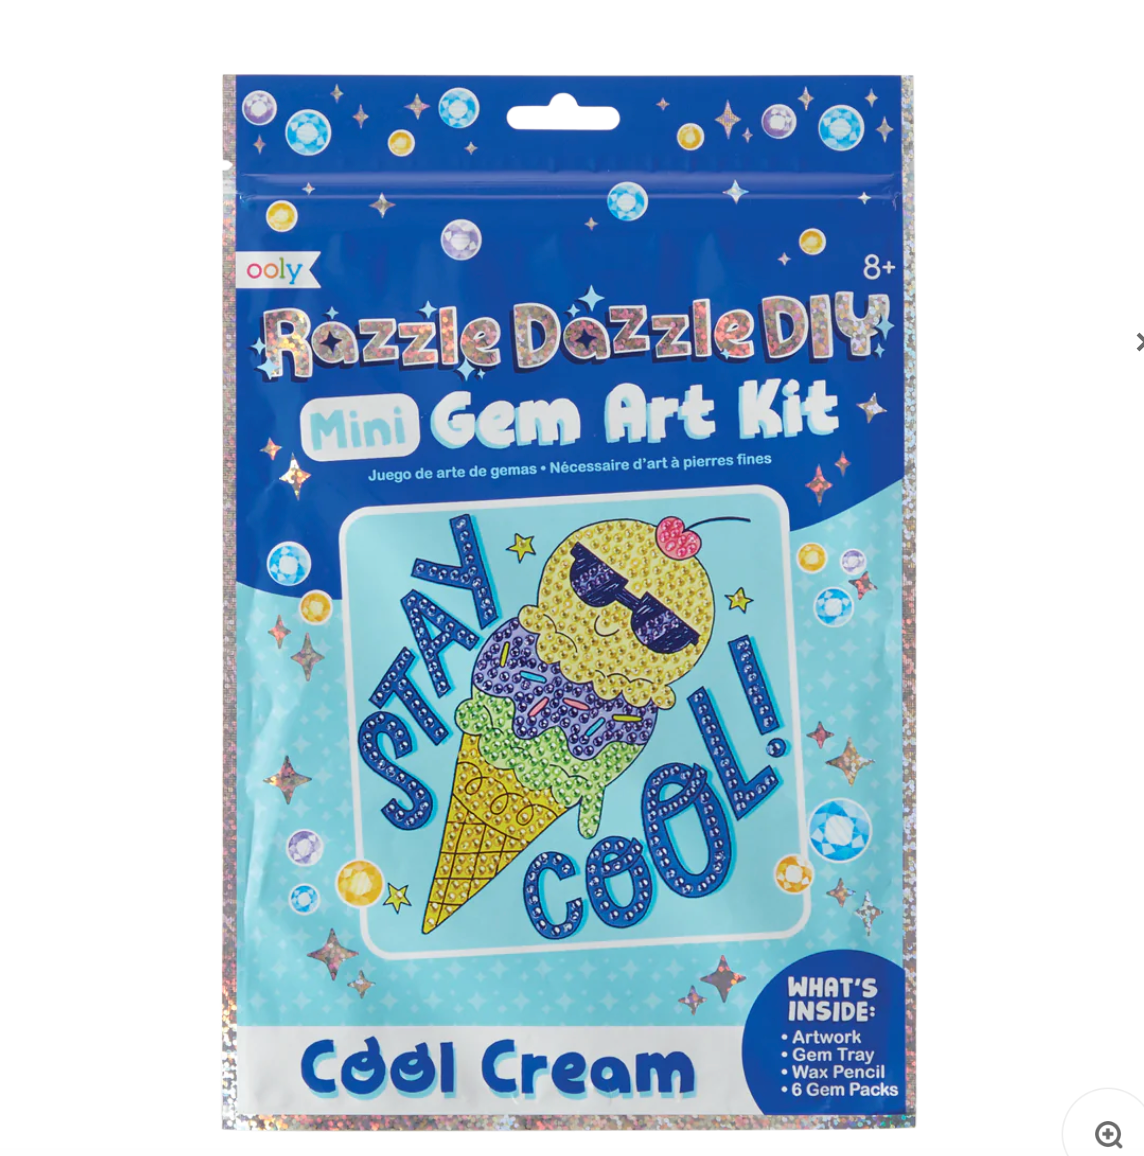 Mini Razzle Dazzle DIY Cool Cream